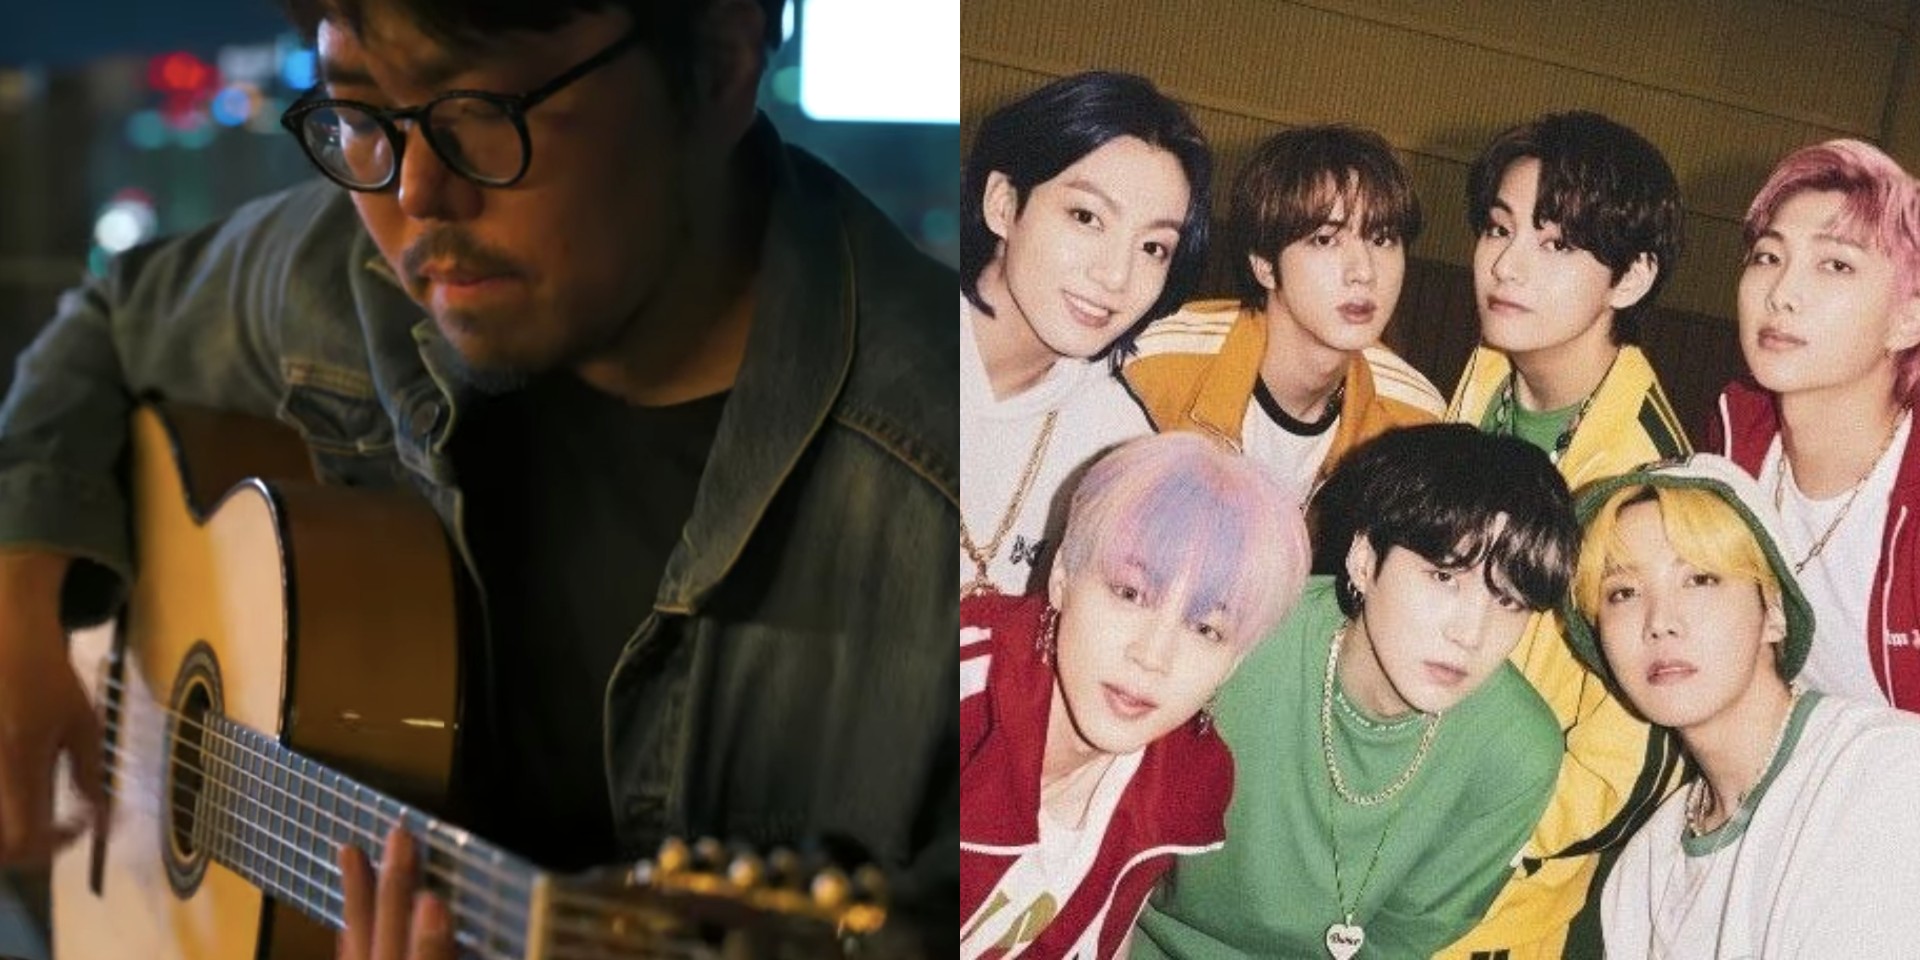 Korean guitarist Juwon Park shares rearranged cover of BTS' 'Butter' – watch